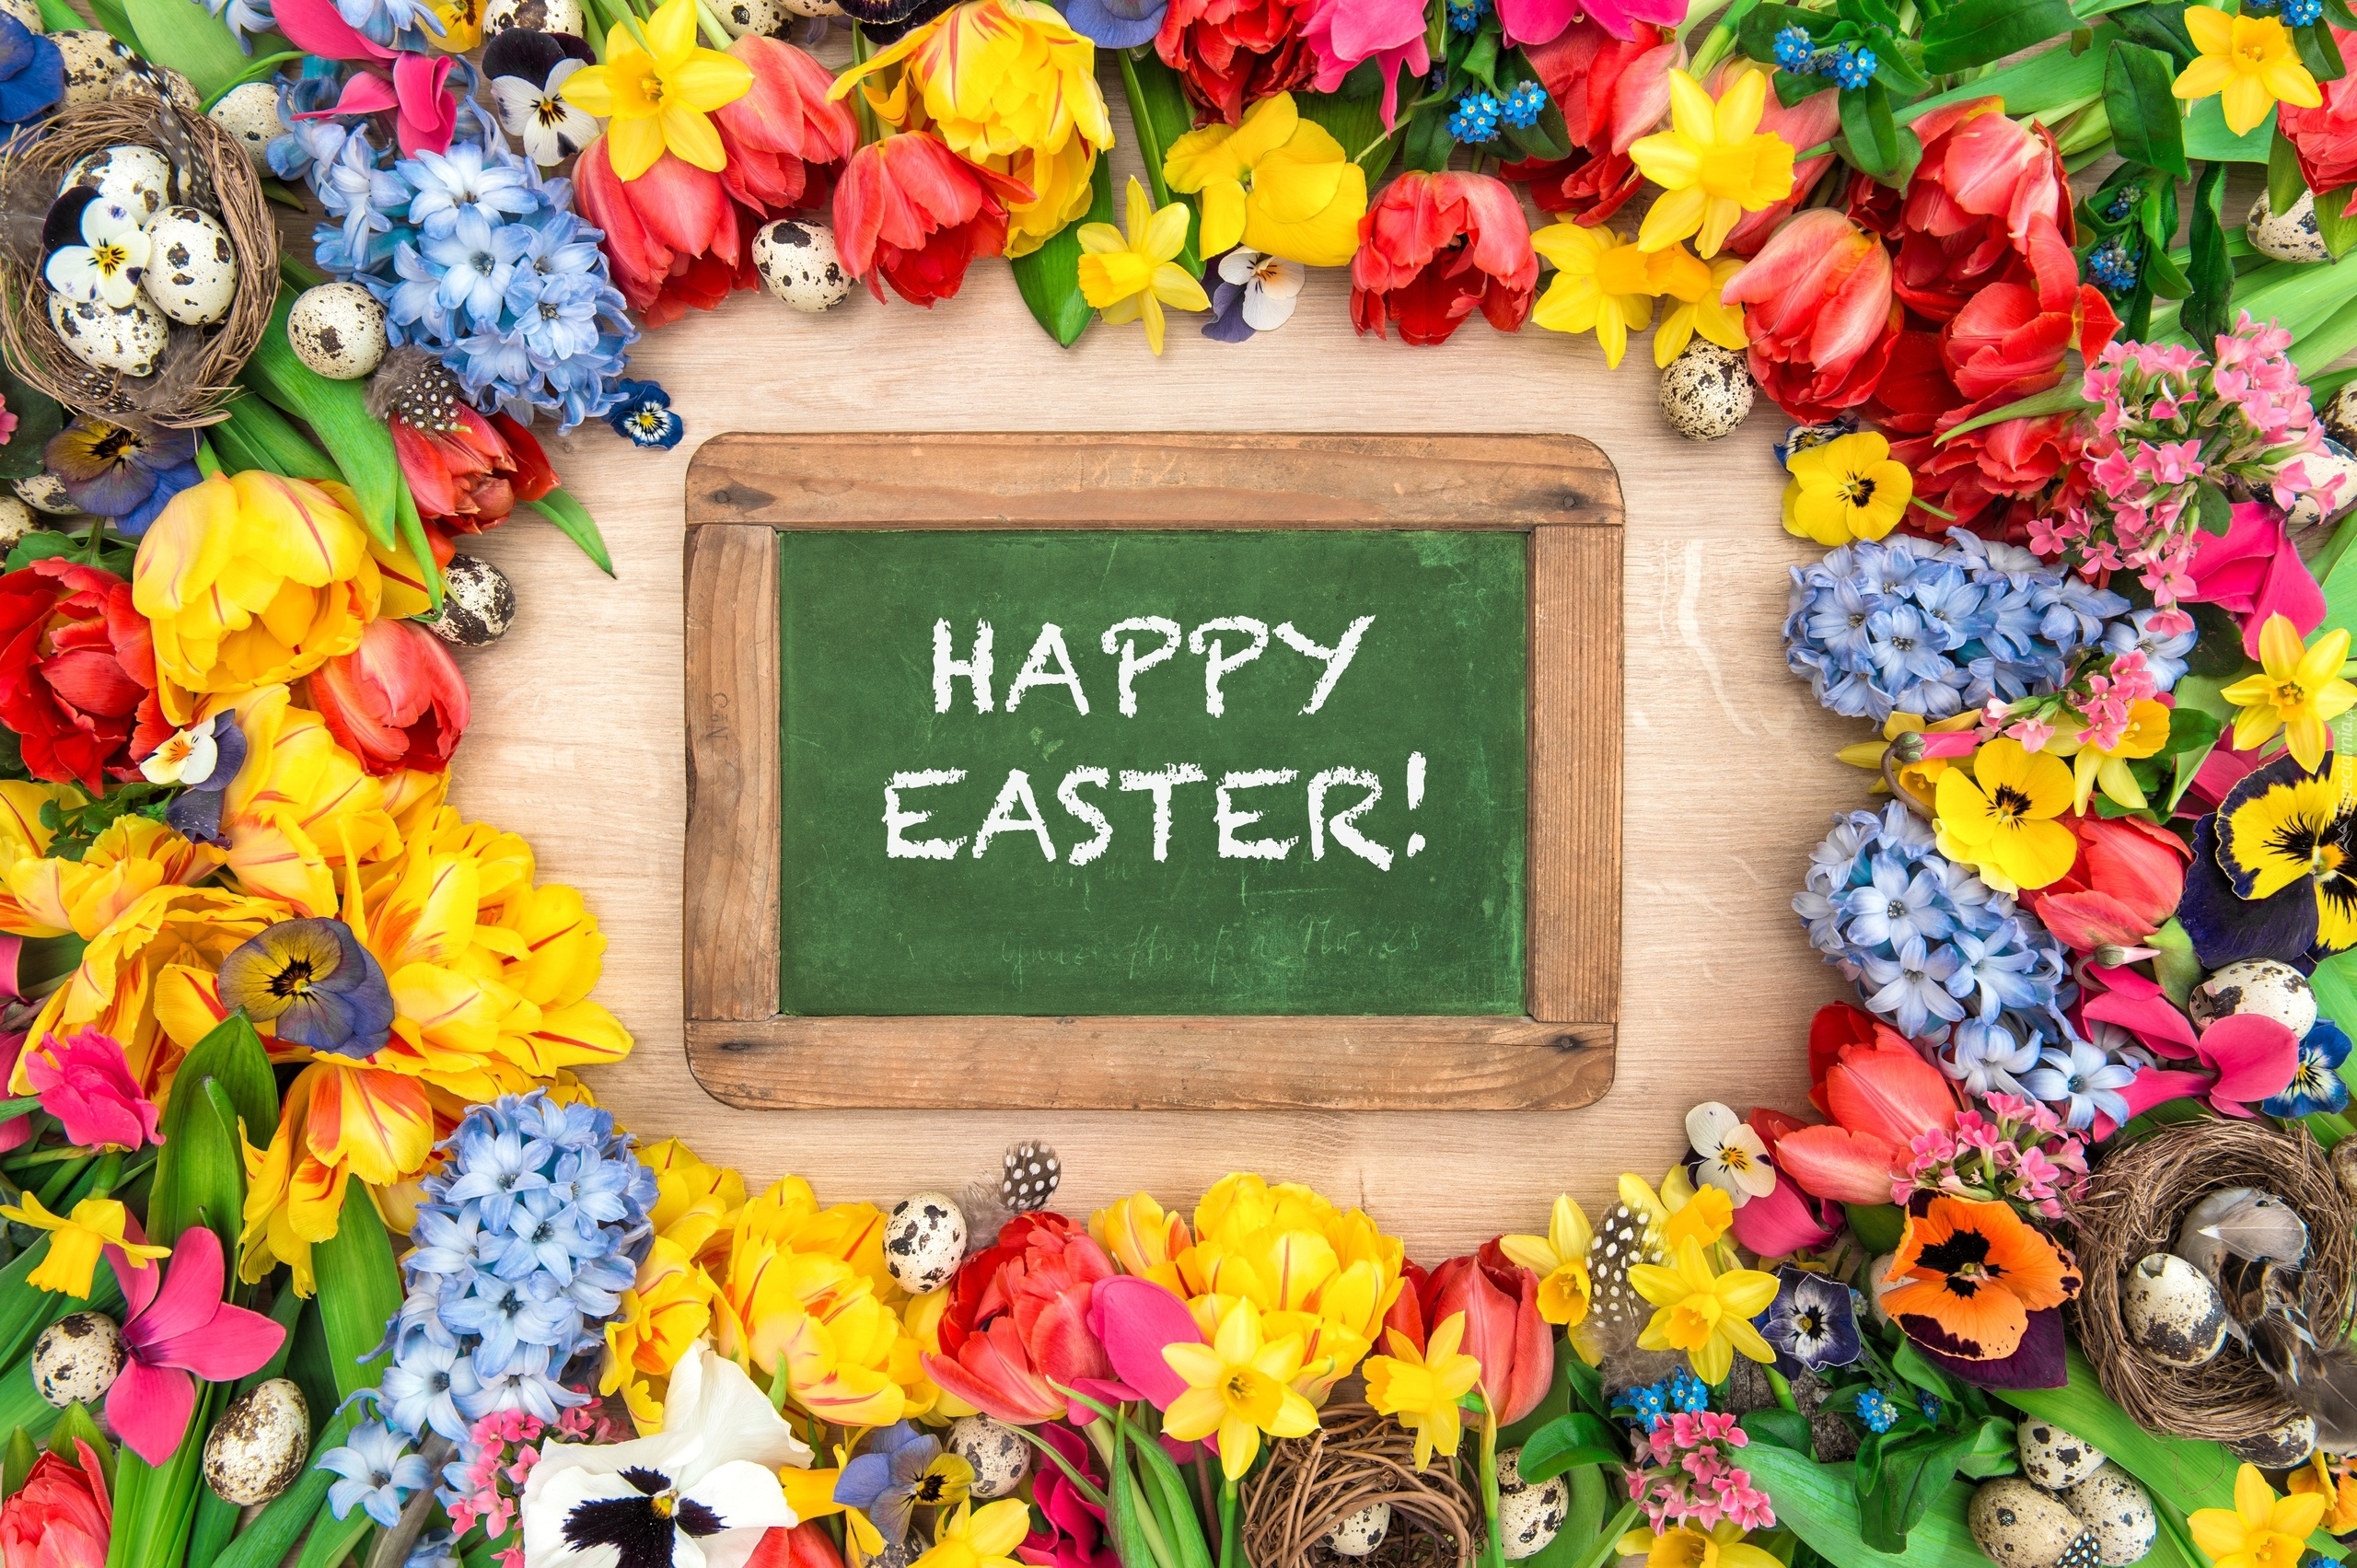 Wielkanoc, Tabliczka, Napis, Happy Easter, Wiosenne, Kwiaty, Jajka, Gniazdka, Deski, Bratki, Hiacynty, Tulipany, Żonkile